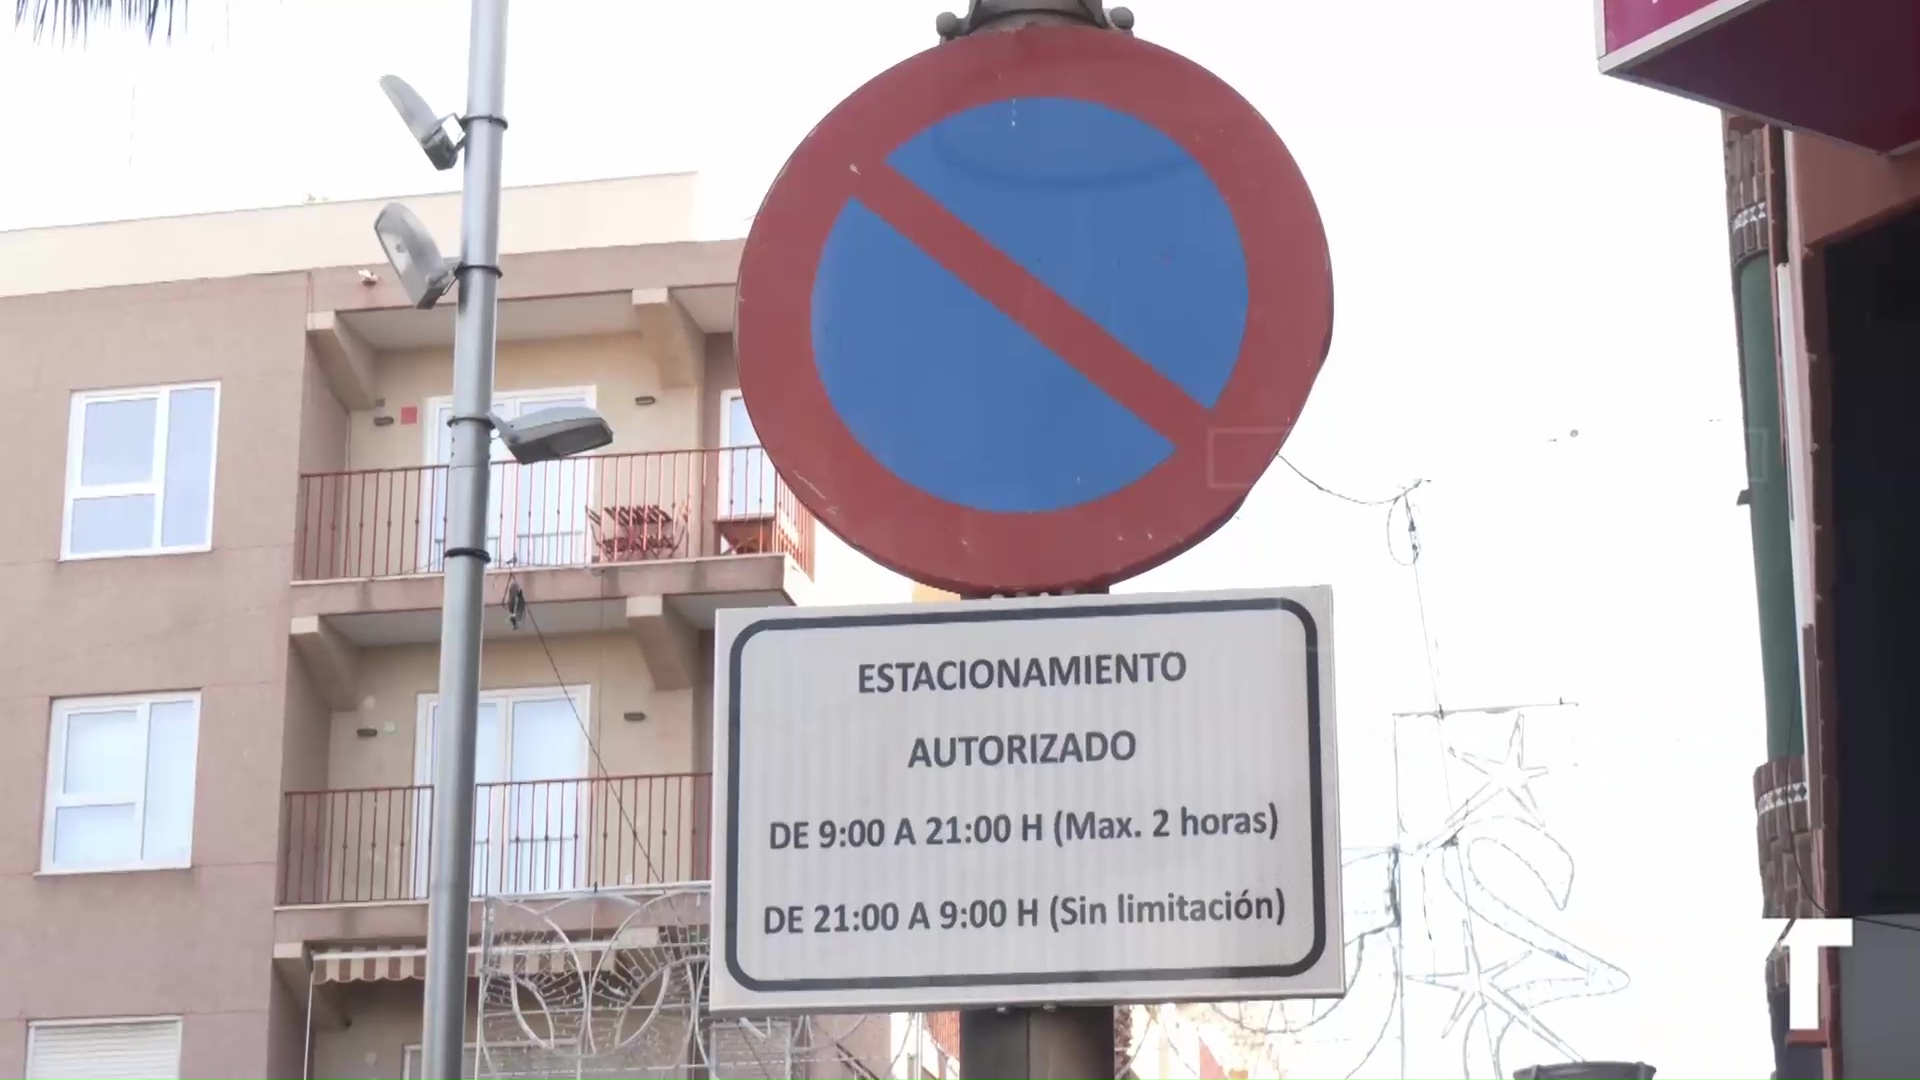 Imagen de Nueva modificación de estacionamiento autorizado en Ramón Gallud: de 9-21h (límite 2 horas) 